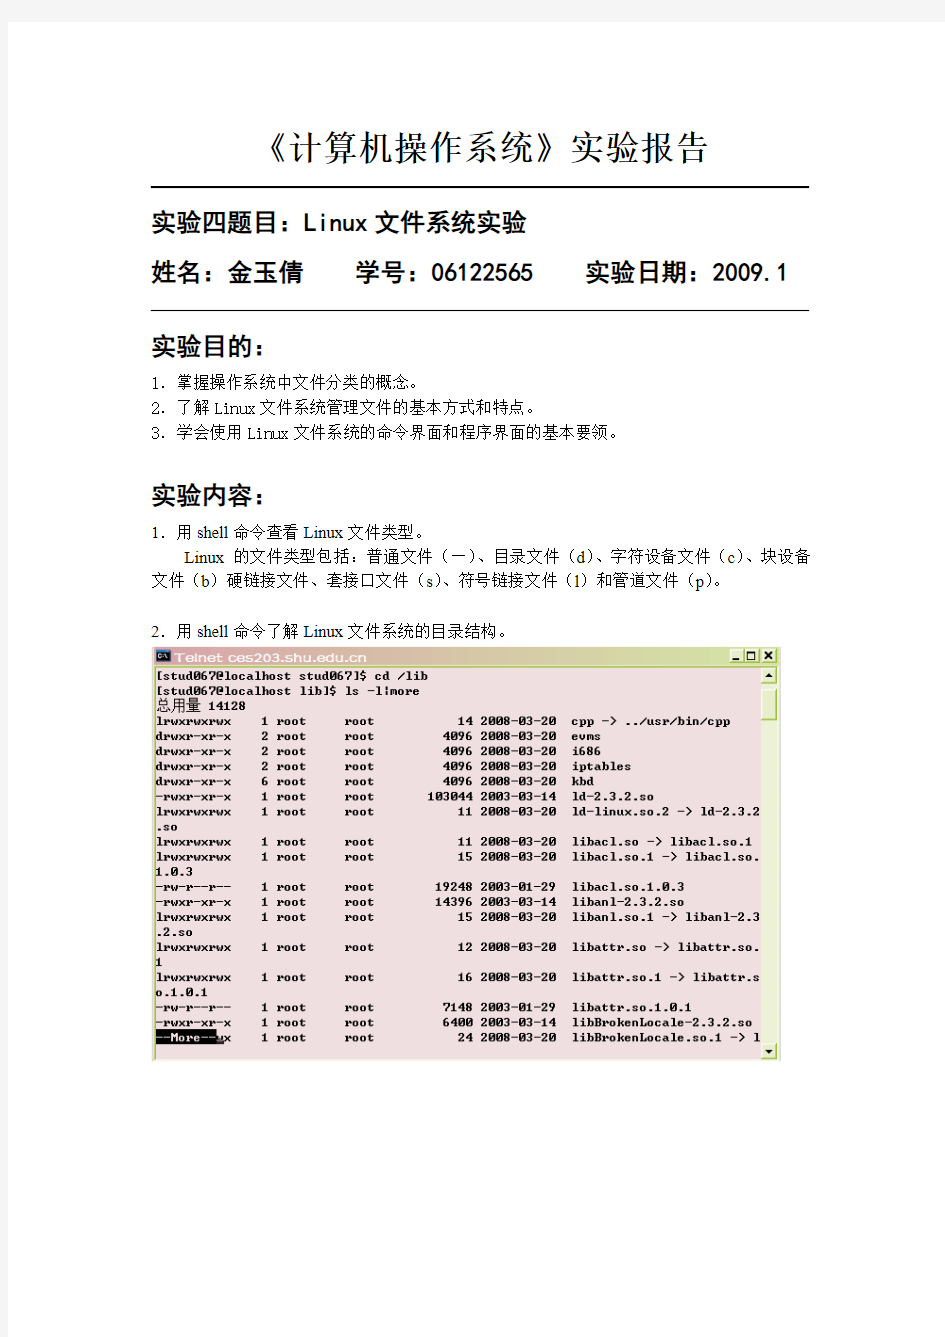 上海大学操作系统2实验报告)